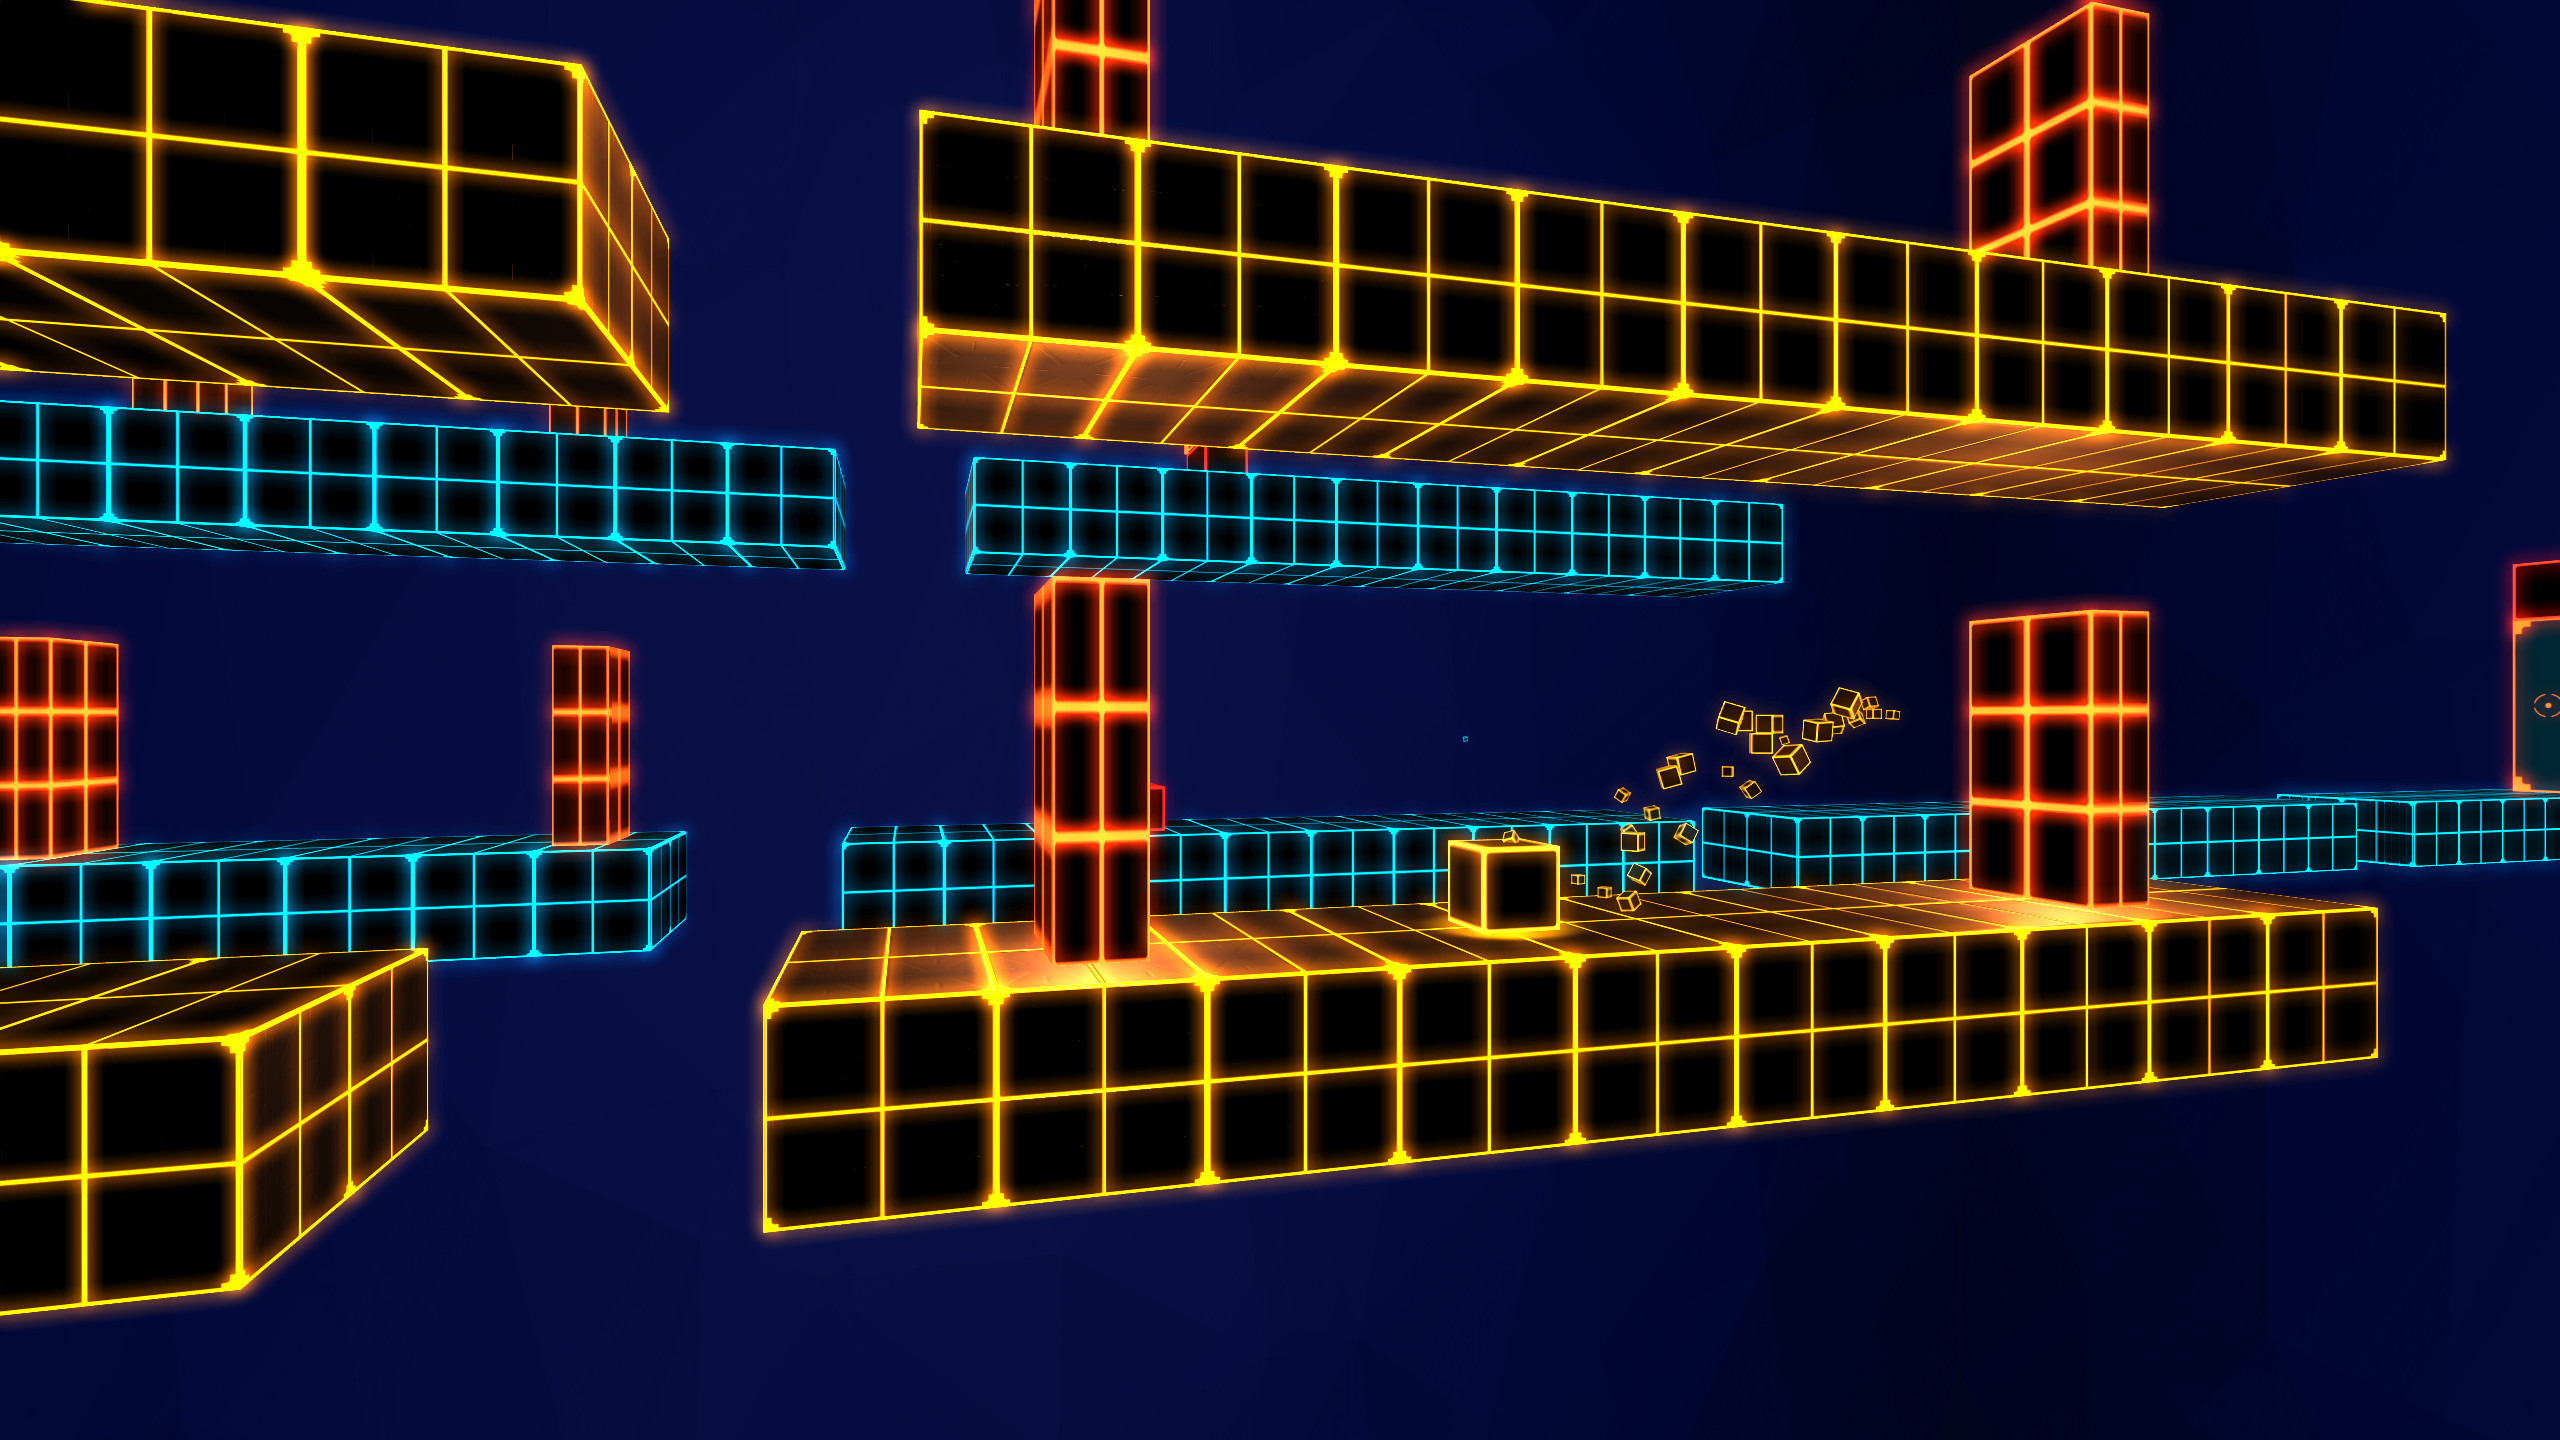 Cube Runner 2 screenshot